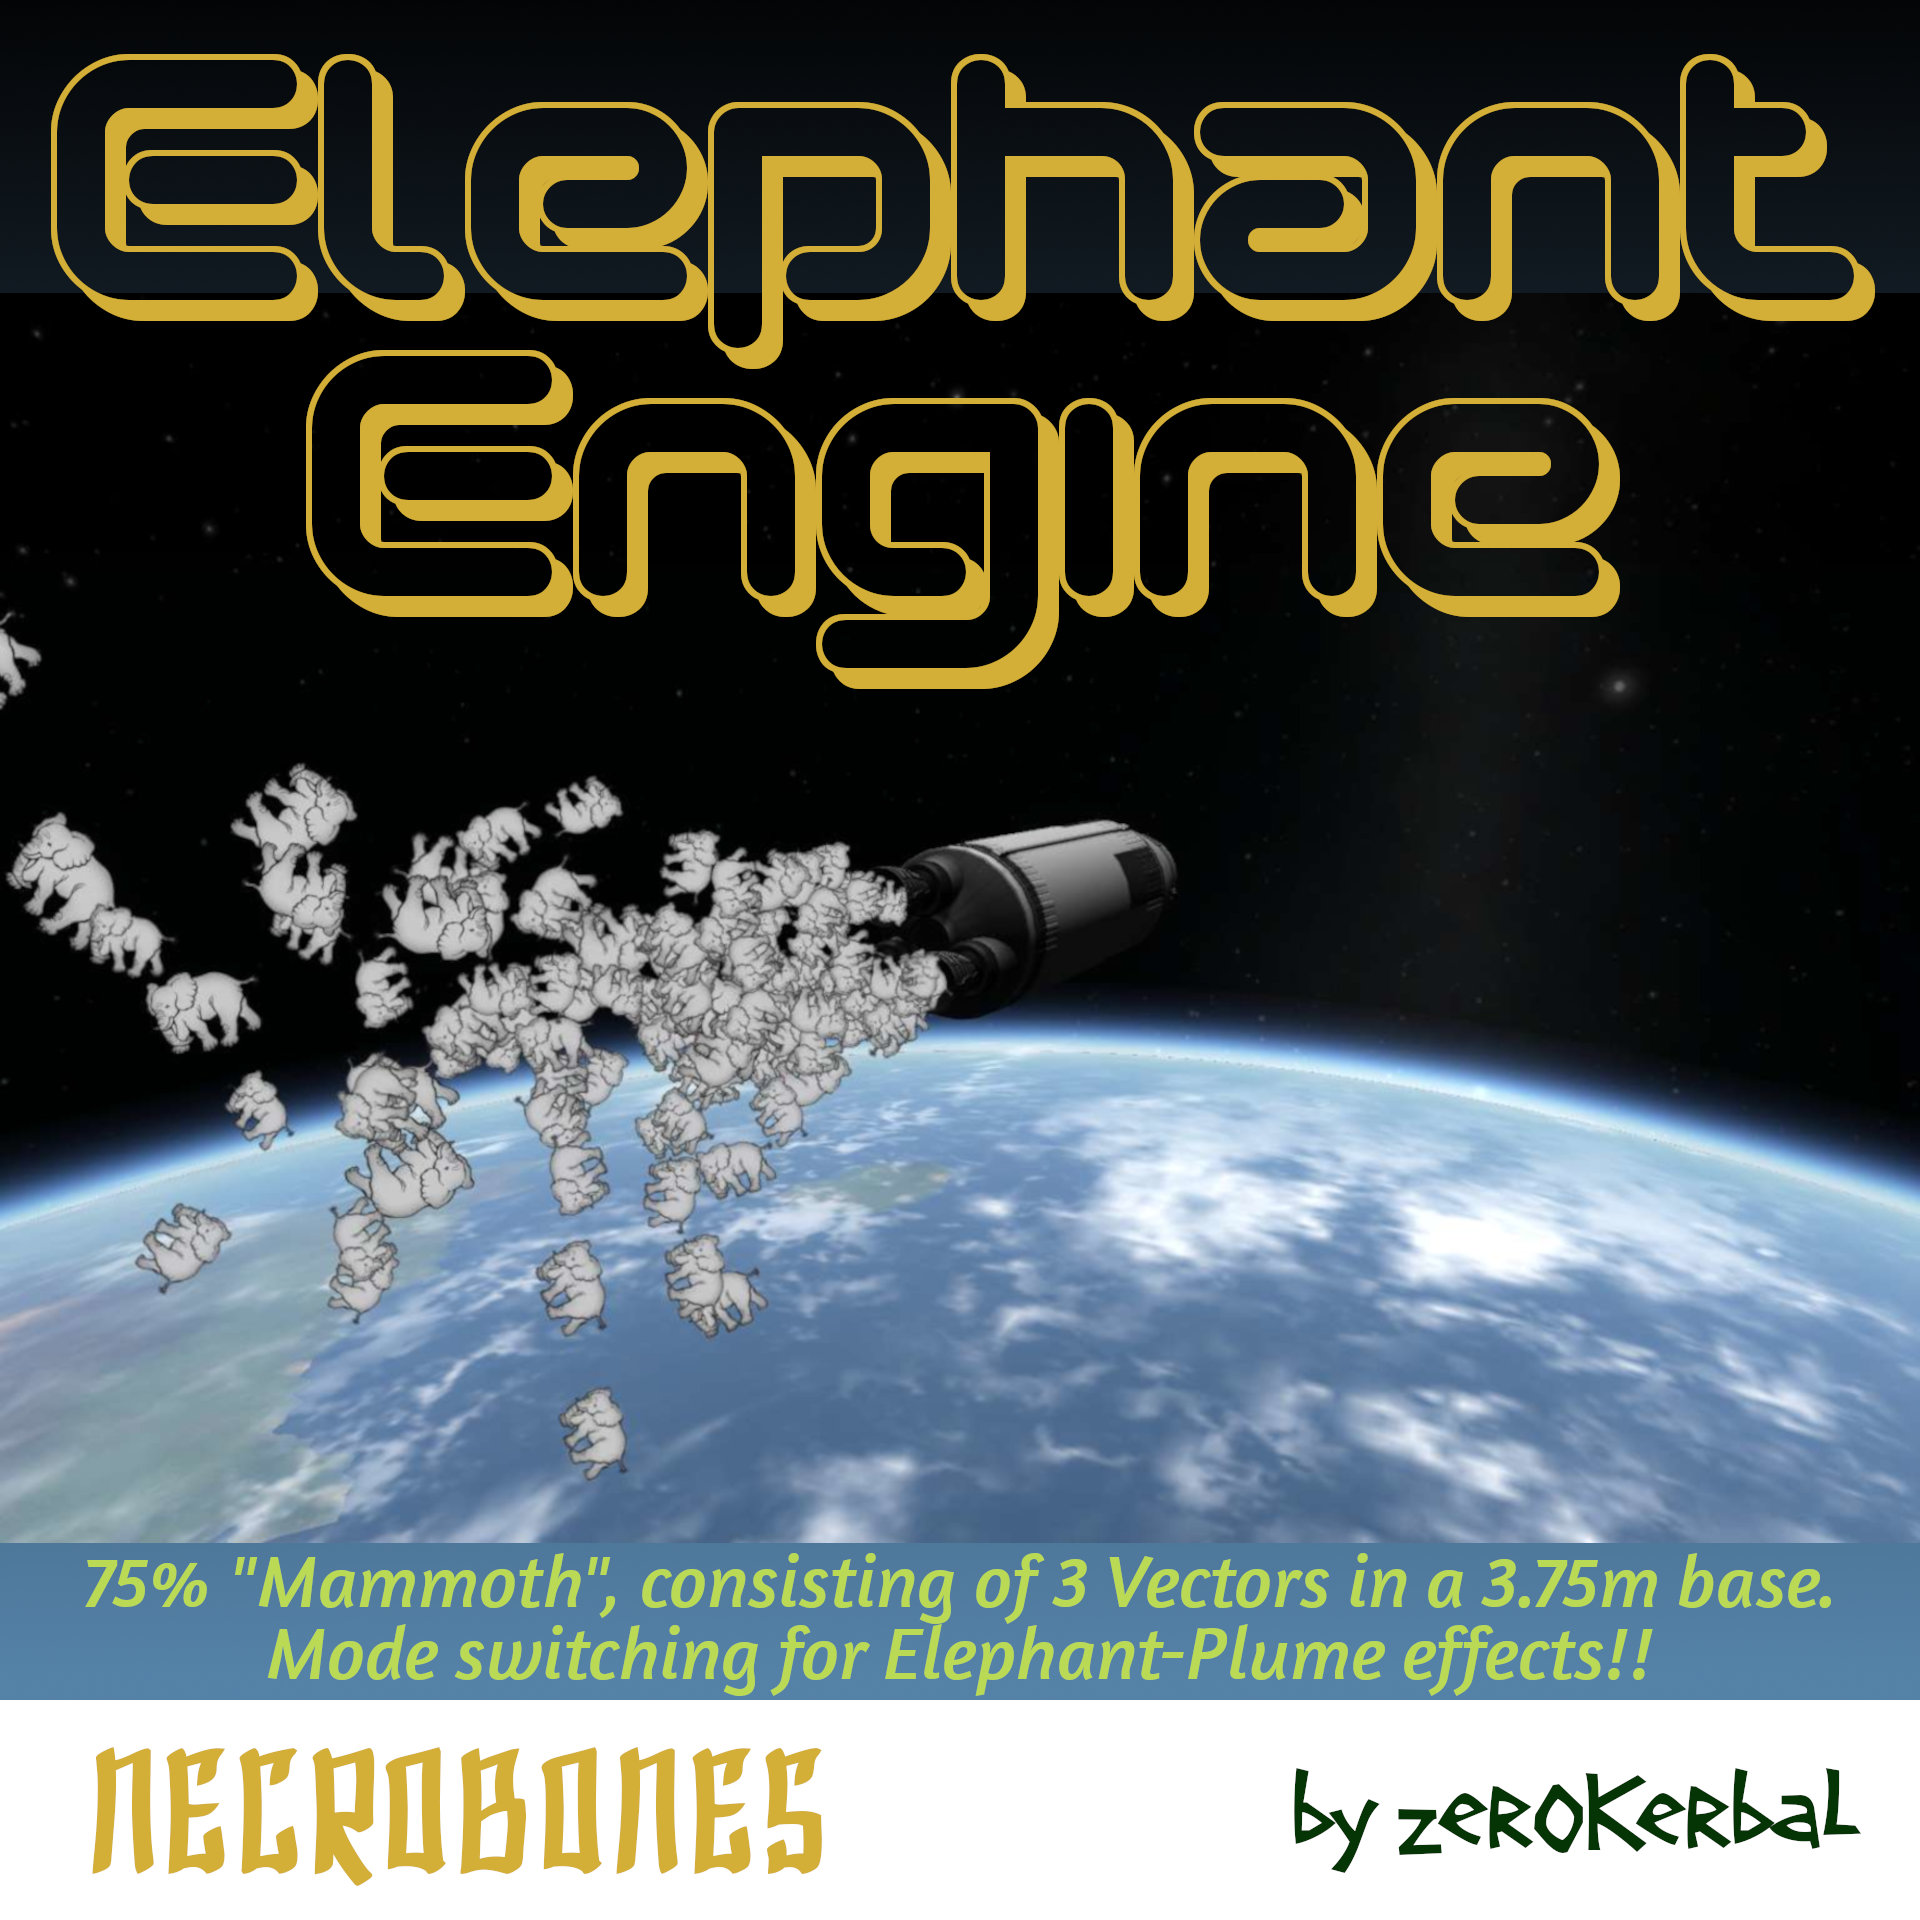 The Elephant Engine